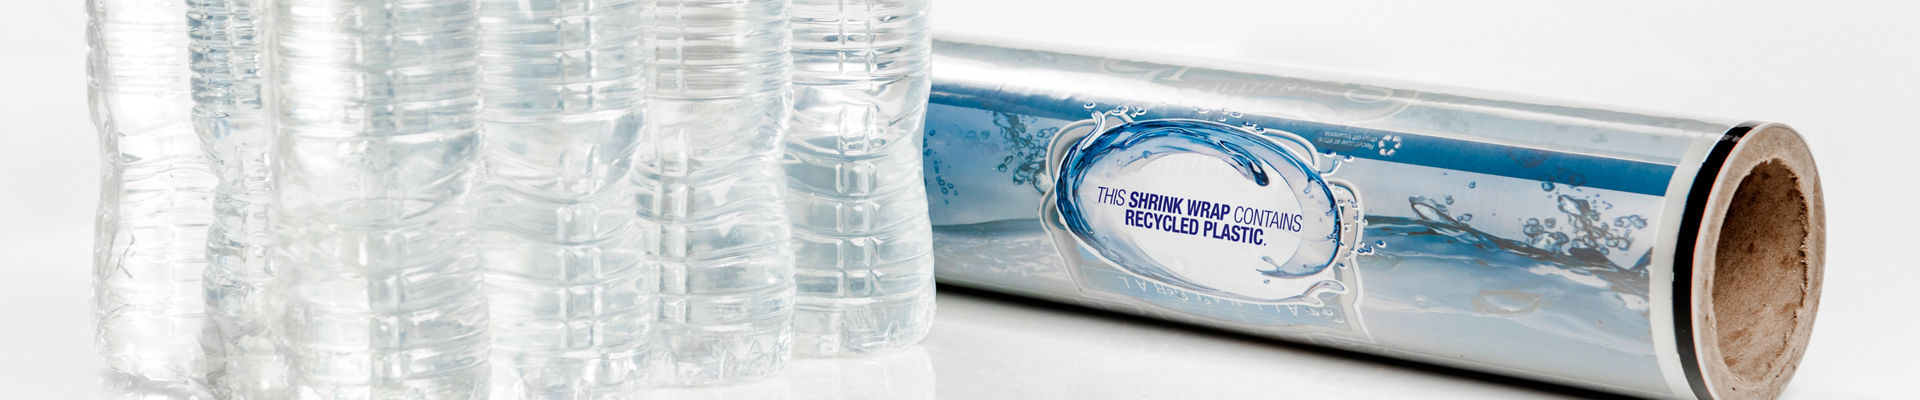 Botellas de agua envueltas en películas retráctiles de colación hechas con resinas recicladas de posconsumo (PCR) de Dow